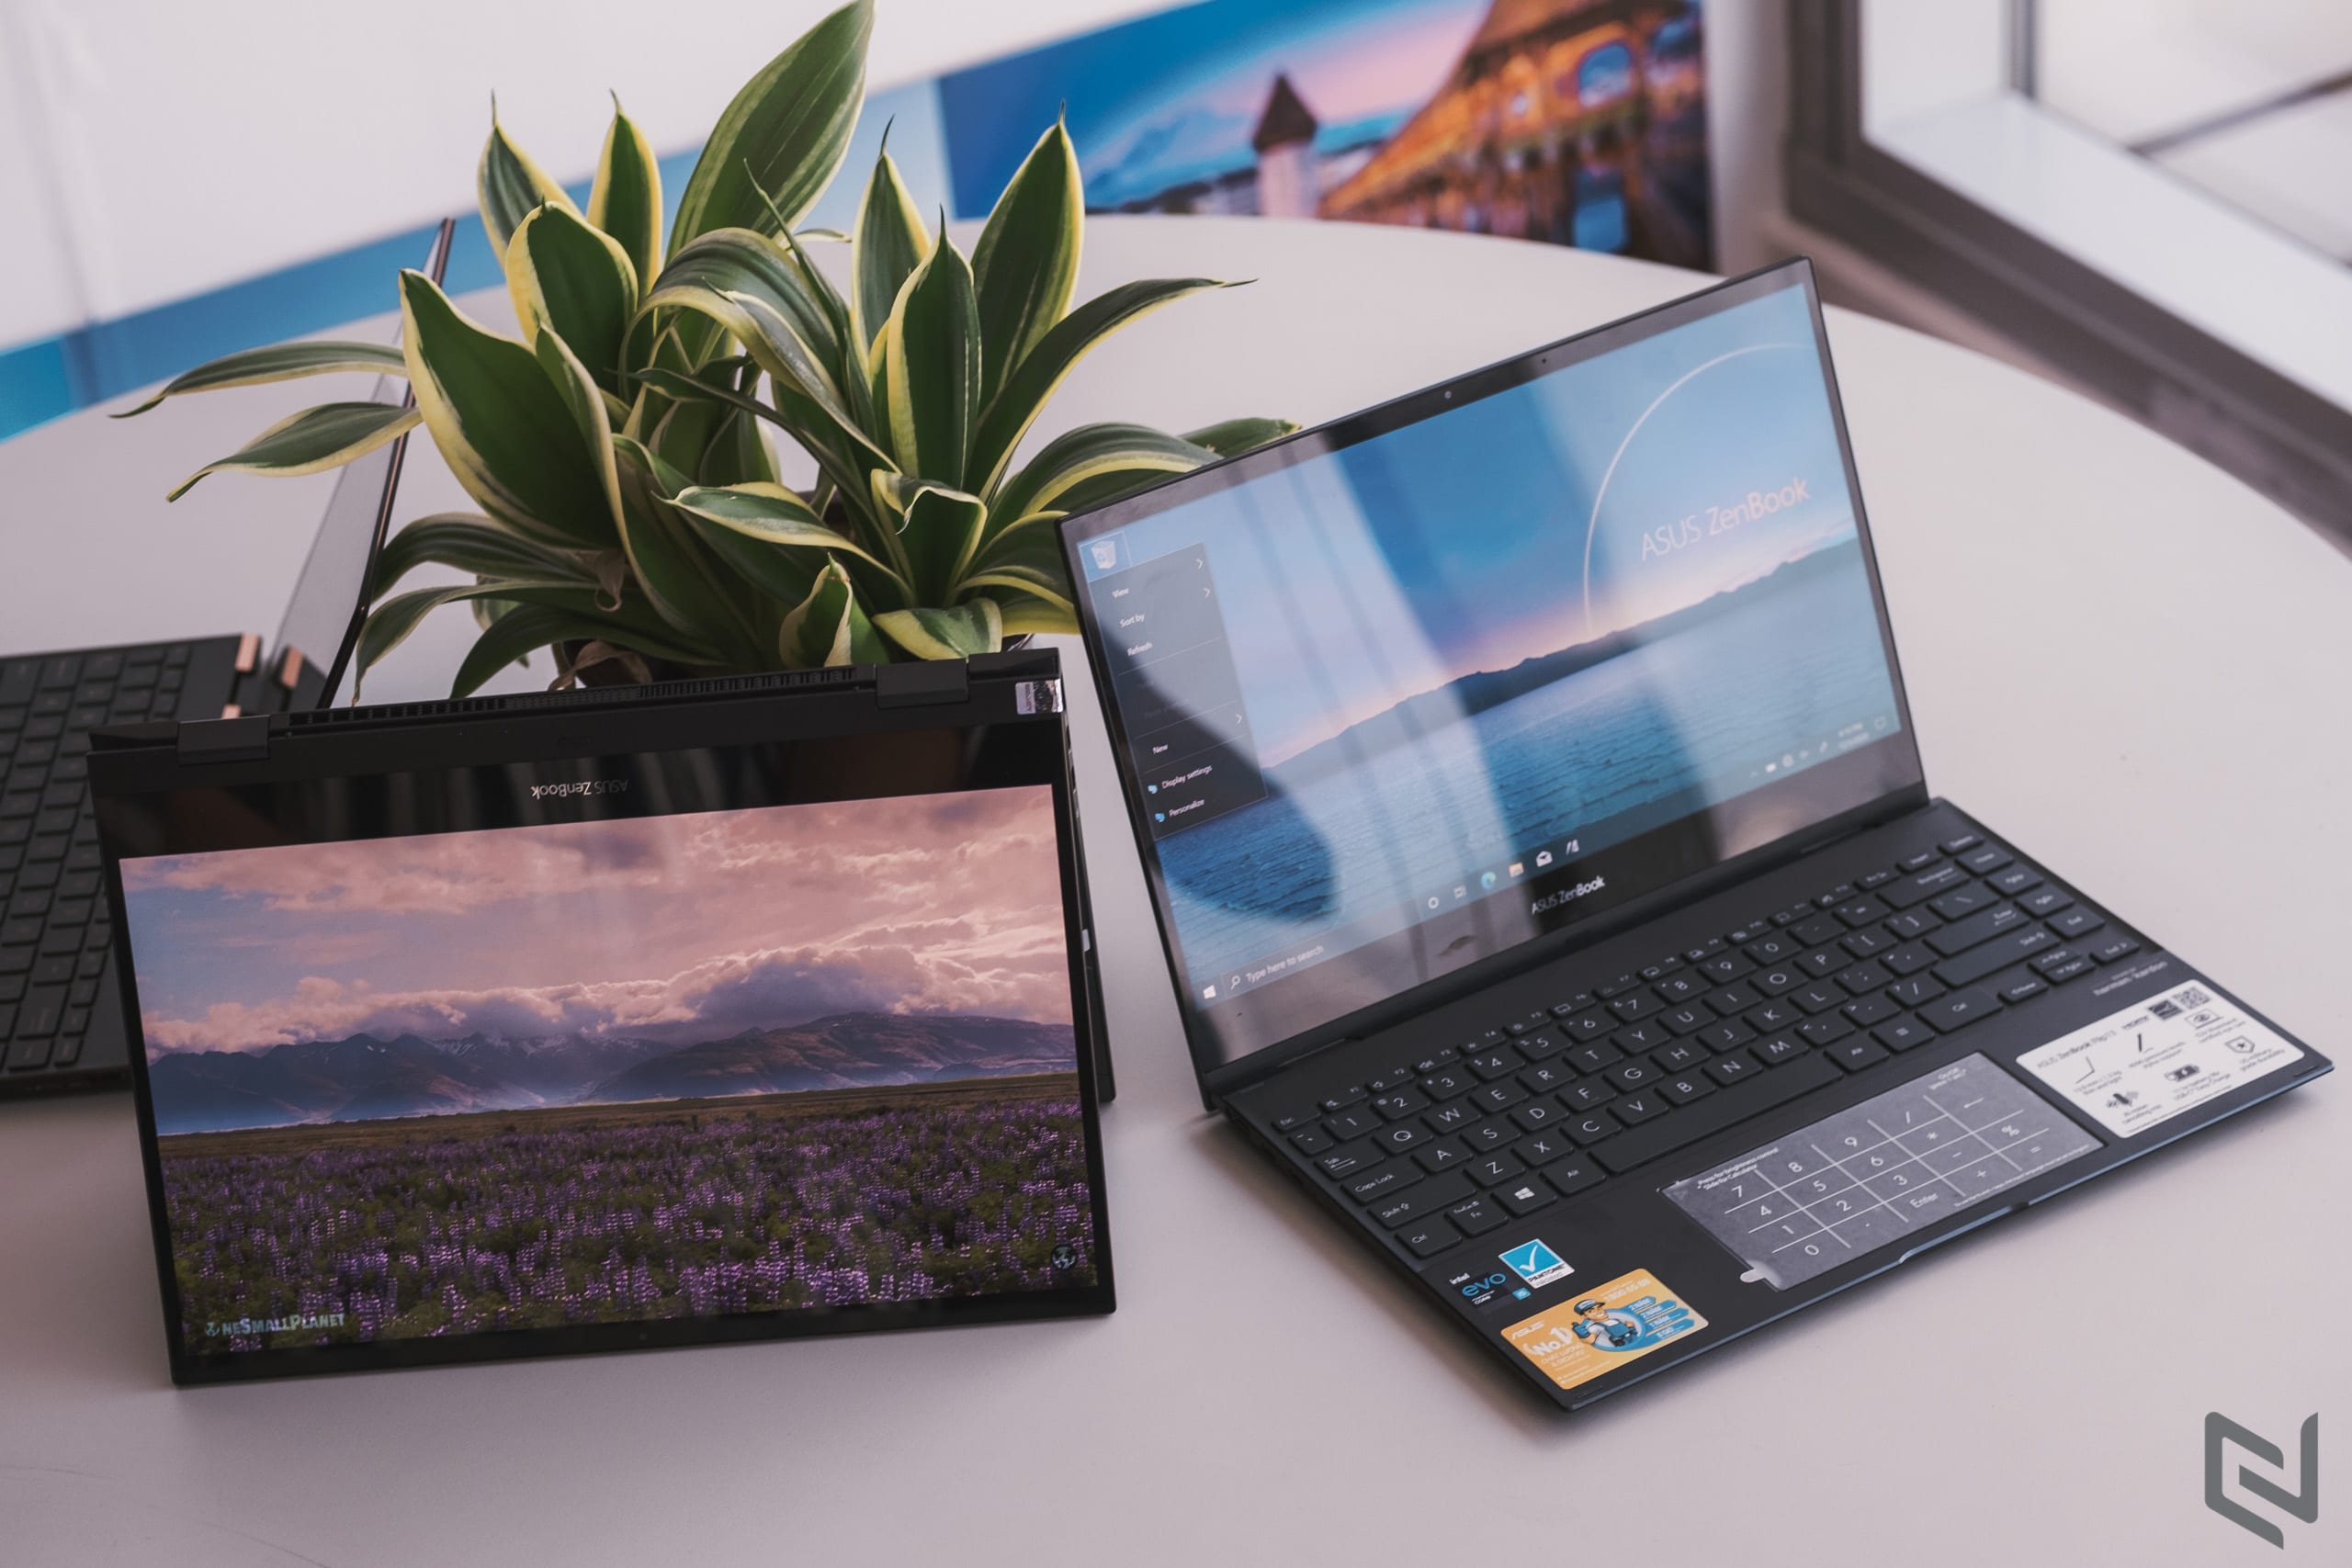 ASUS khơi nguồn phong cách sống cùng ZenBook Flip Series và BST kết hợp cùng Đỗ Mạnh Cường